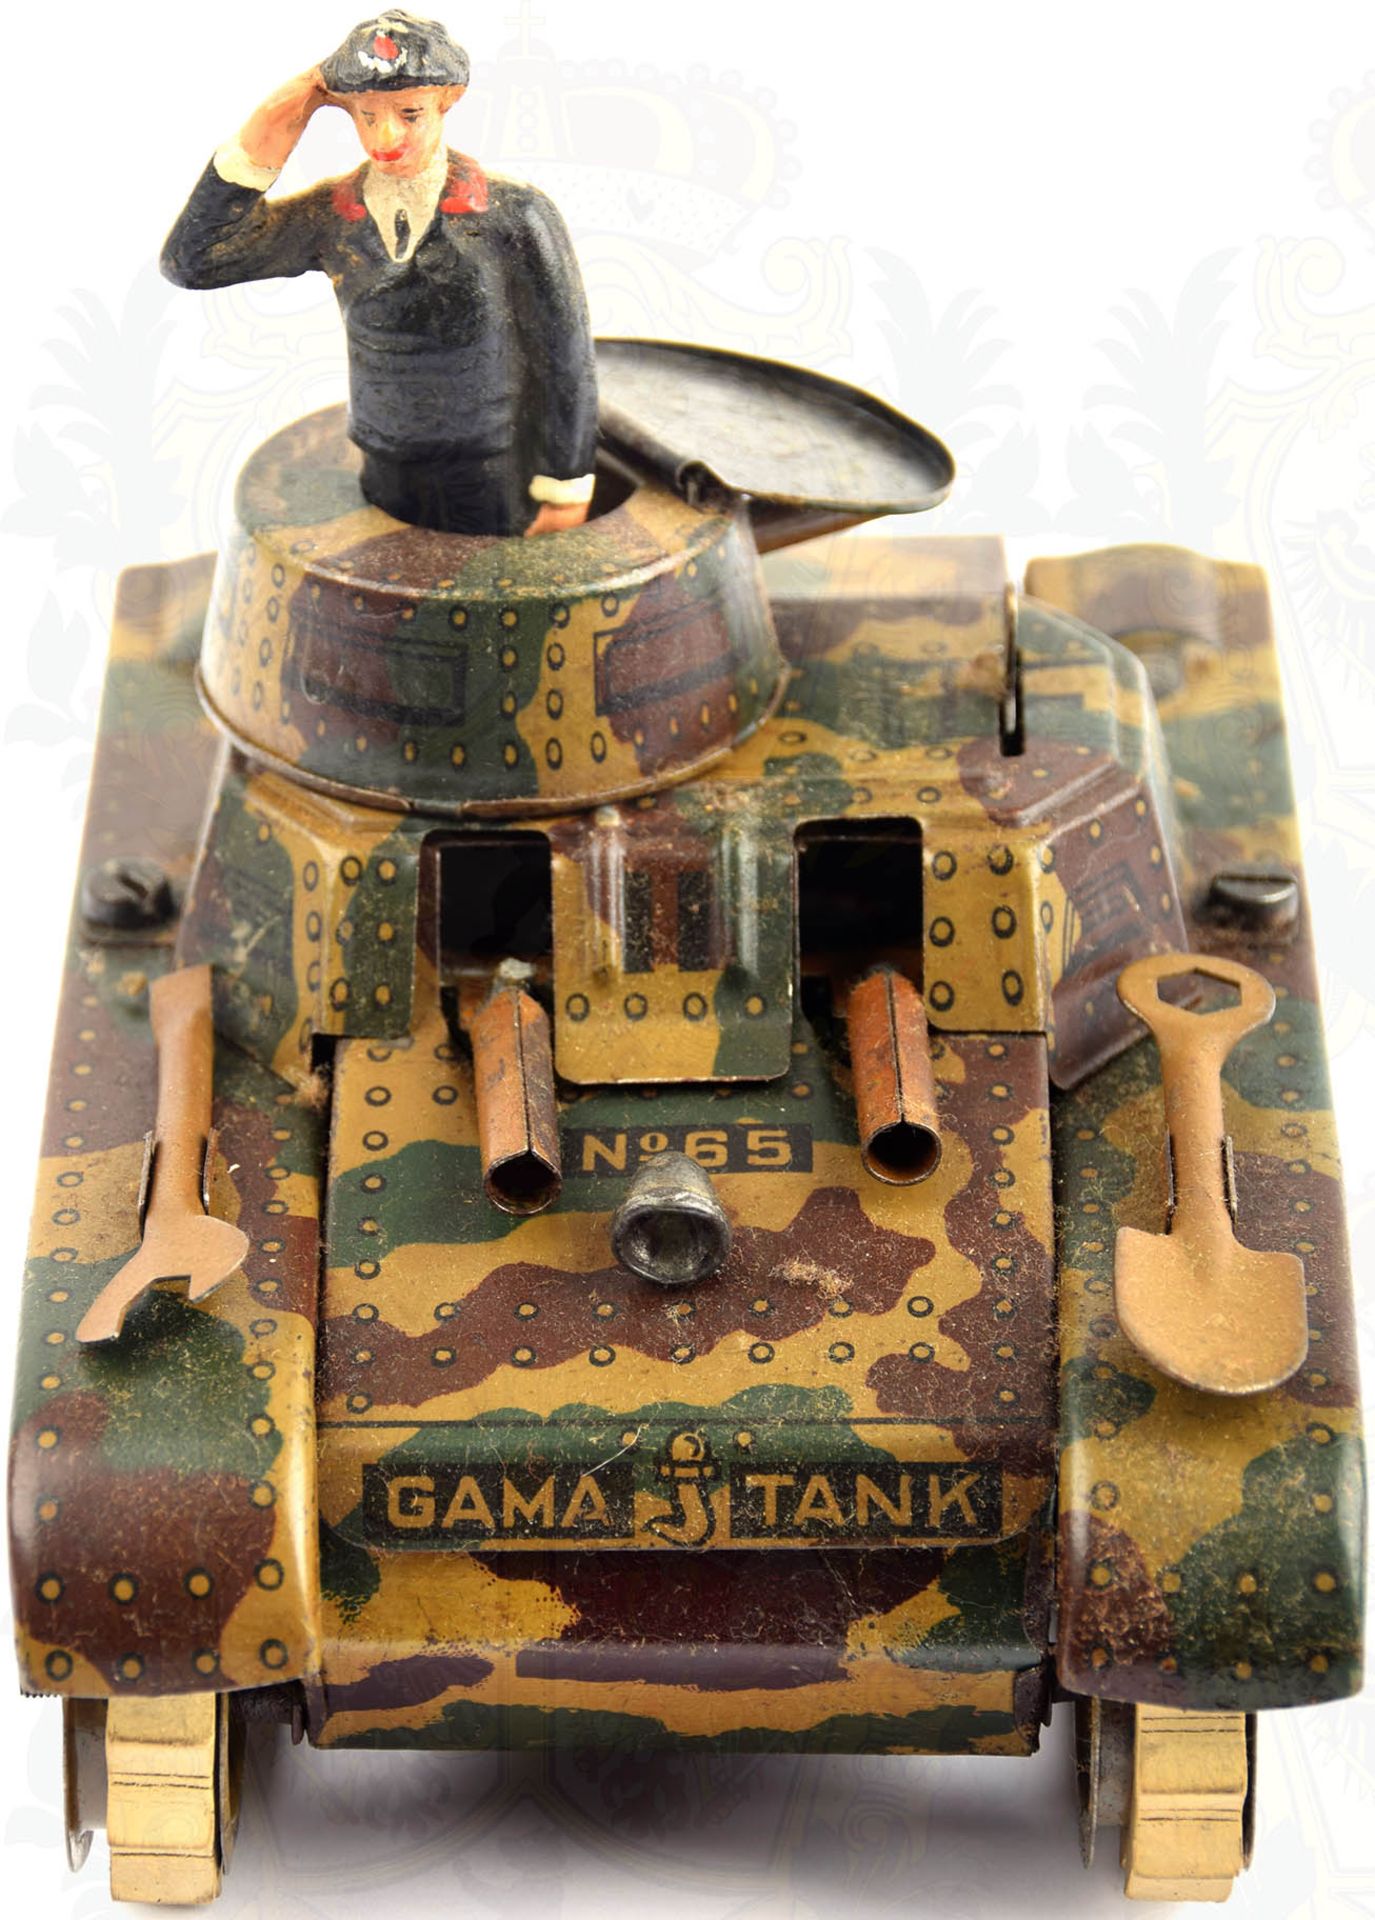 GAMA TANK NO. 65, Made in Germany, Stahlblech m. Mimikri-Lackierung, Spaten, Schraubenschlüssel, - Bild 2 aus 4